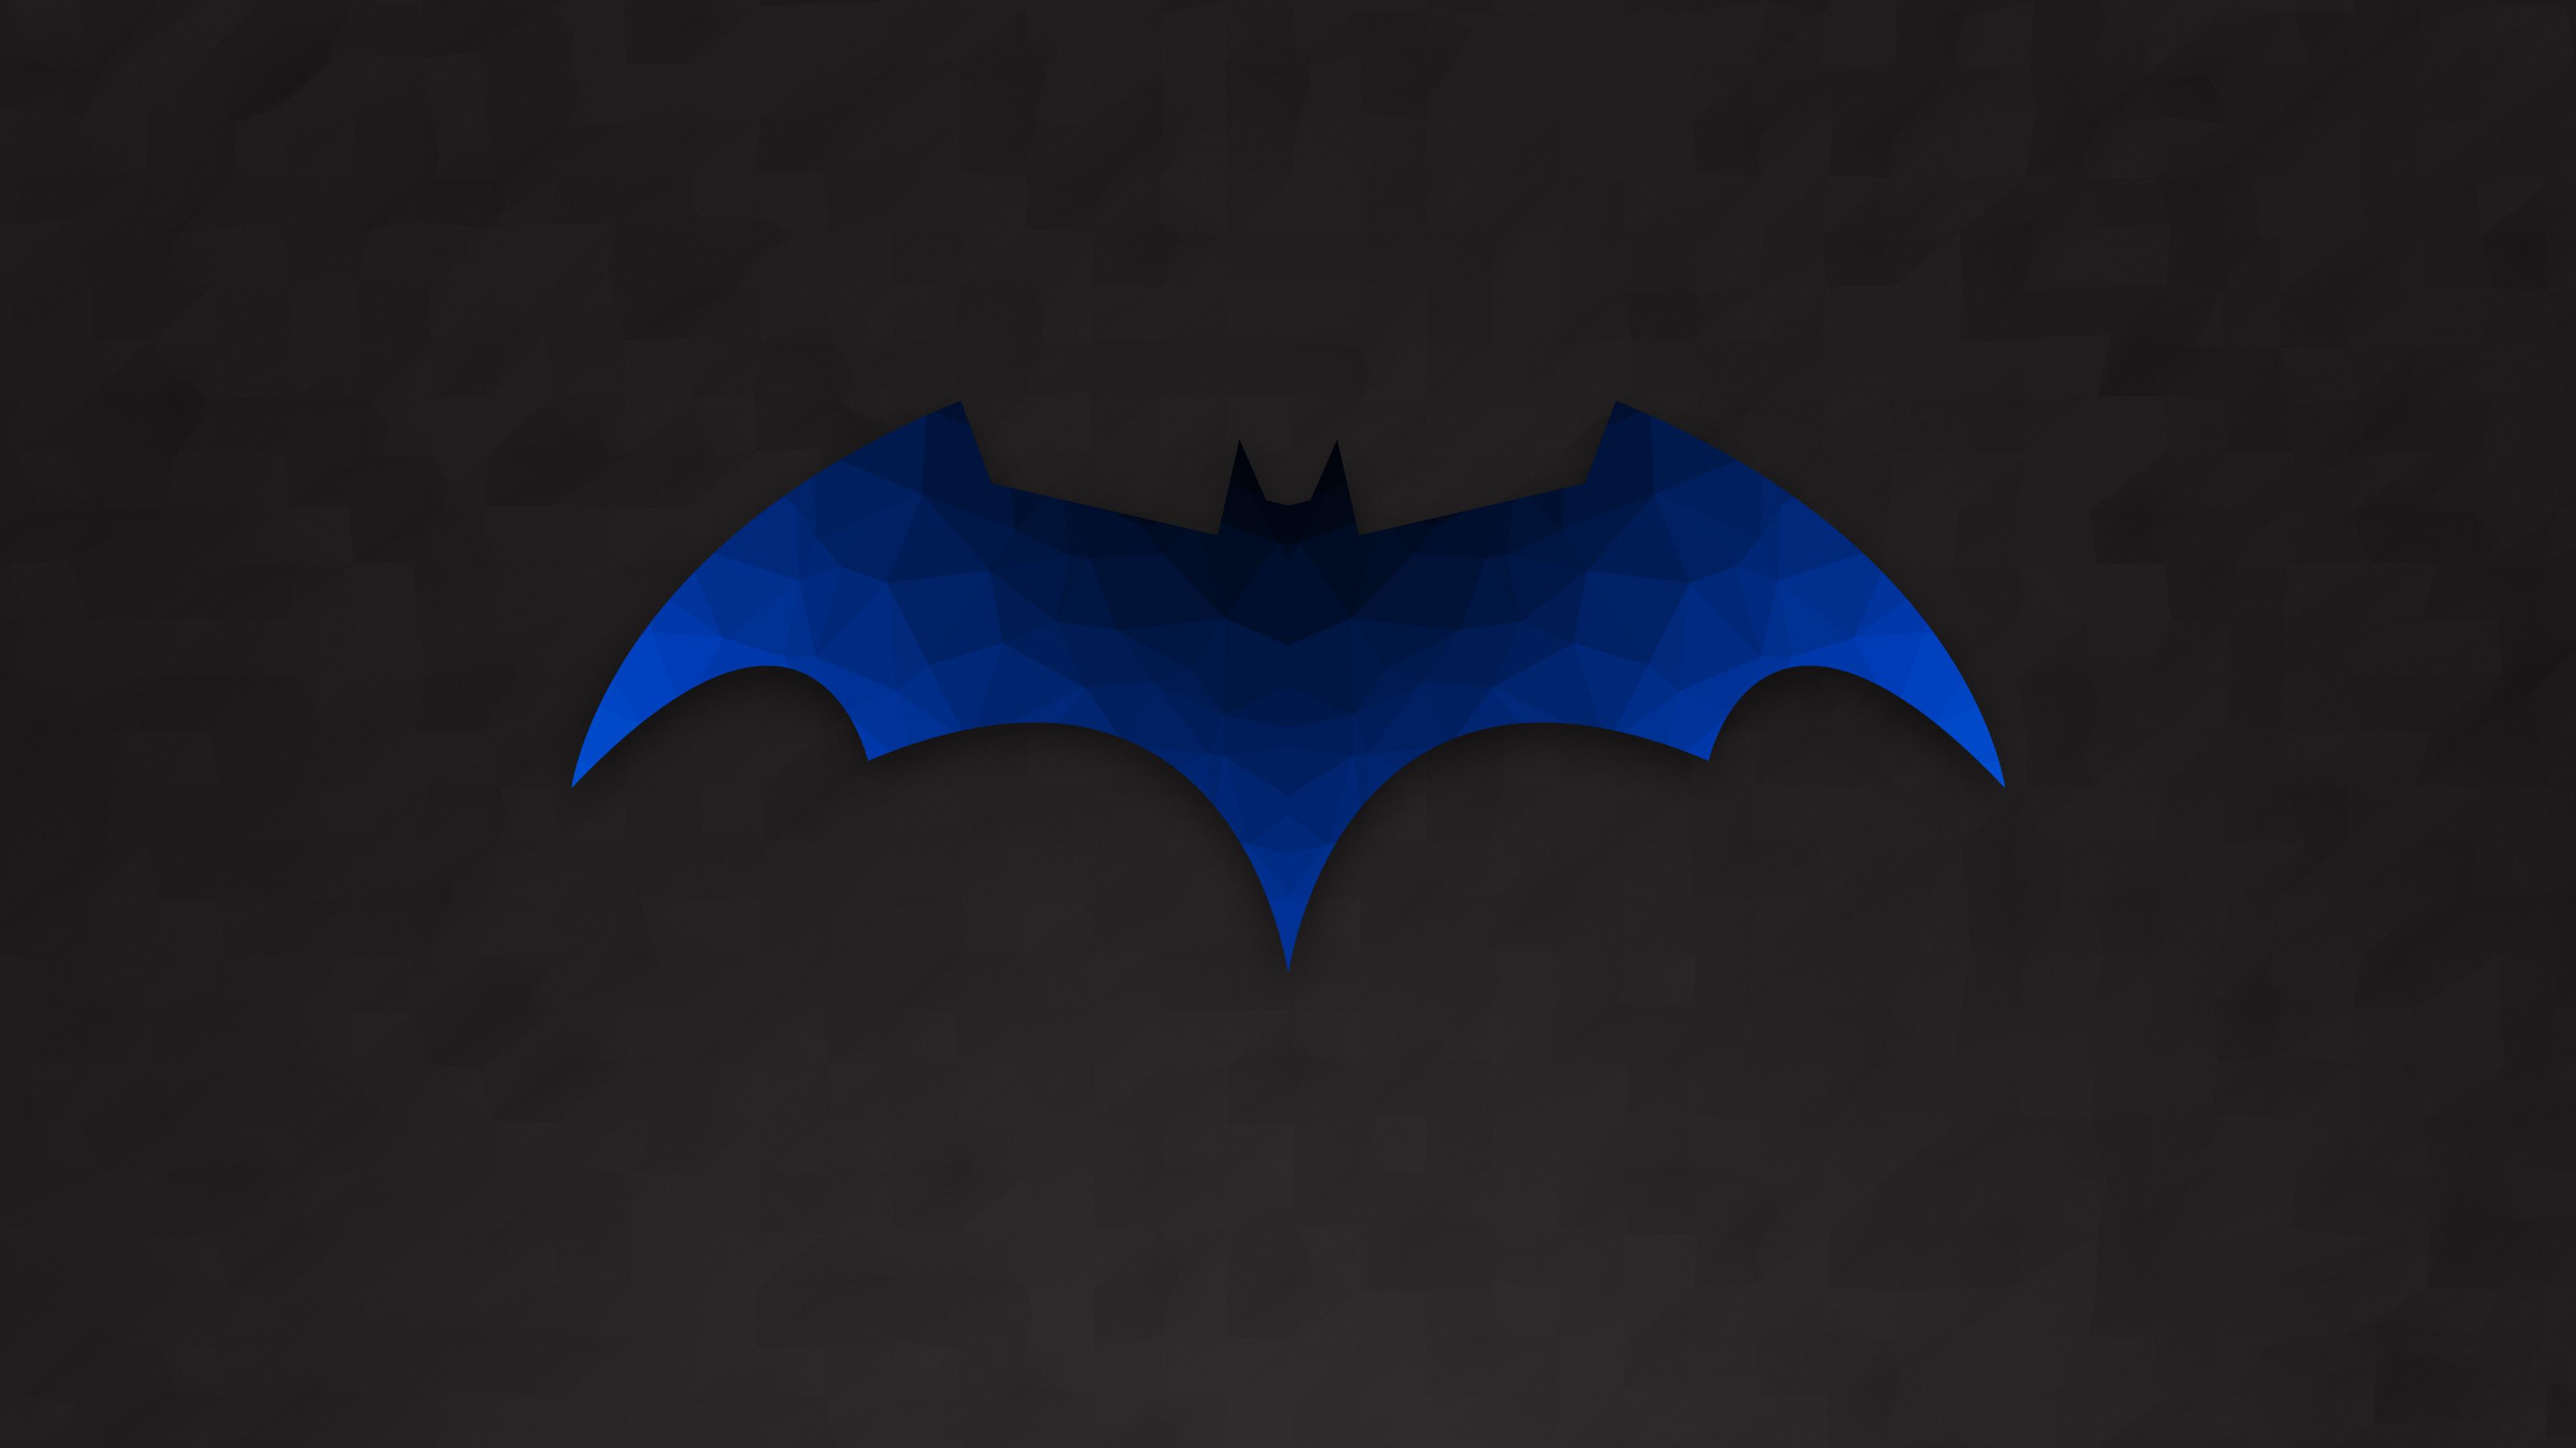 Low Polygon Batman Logo Wallpaper HD 4k